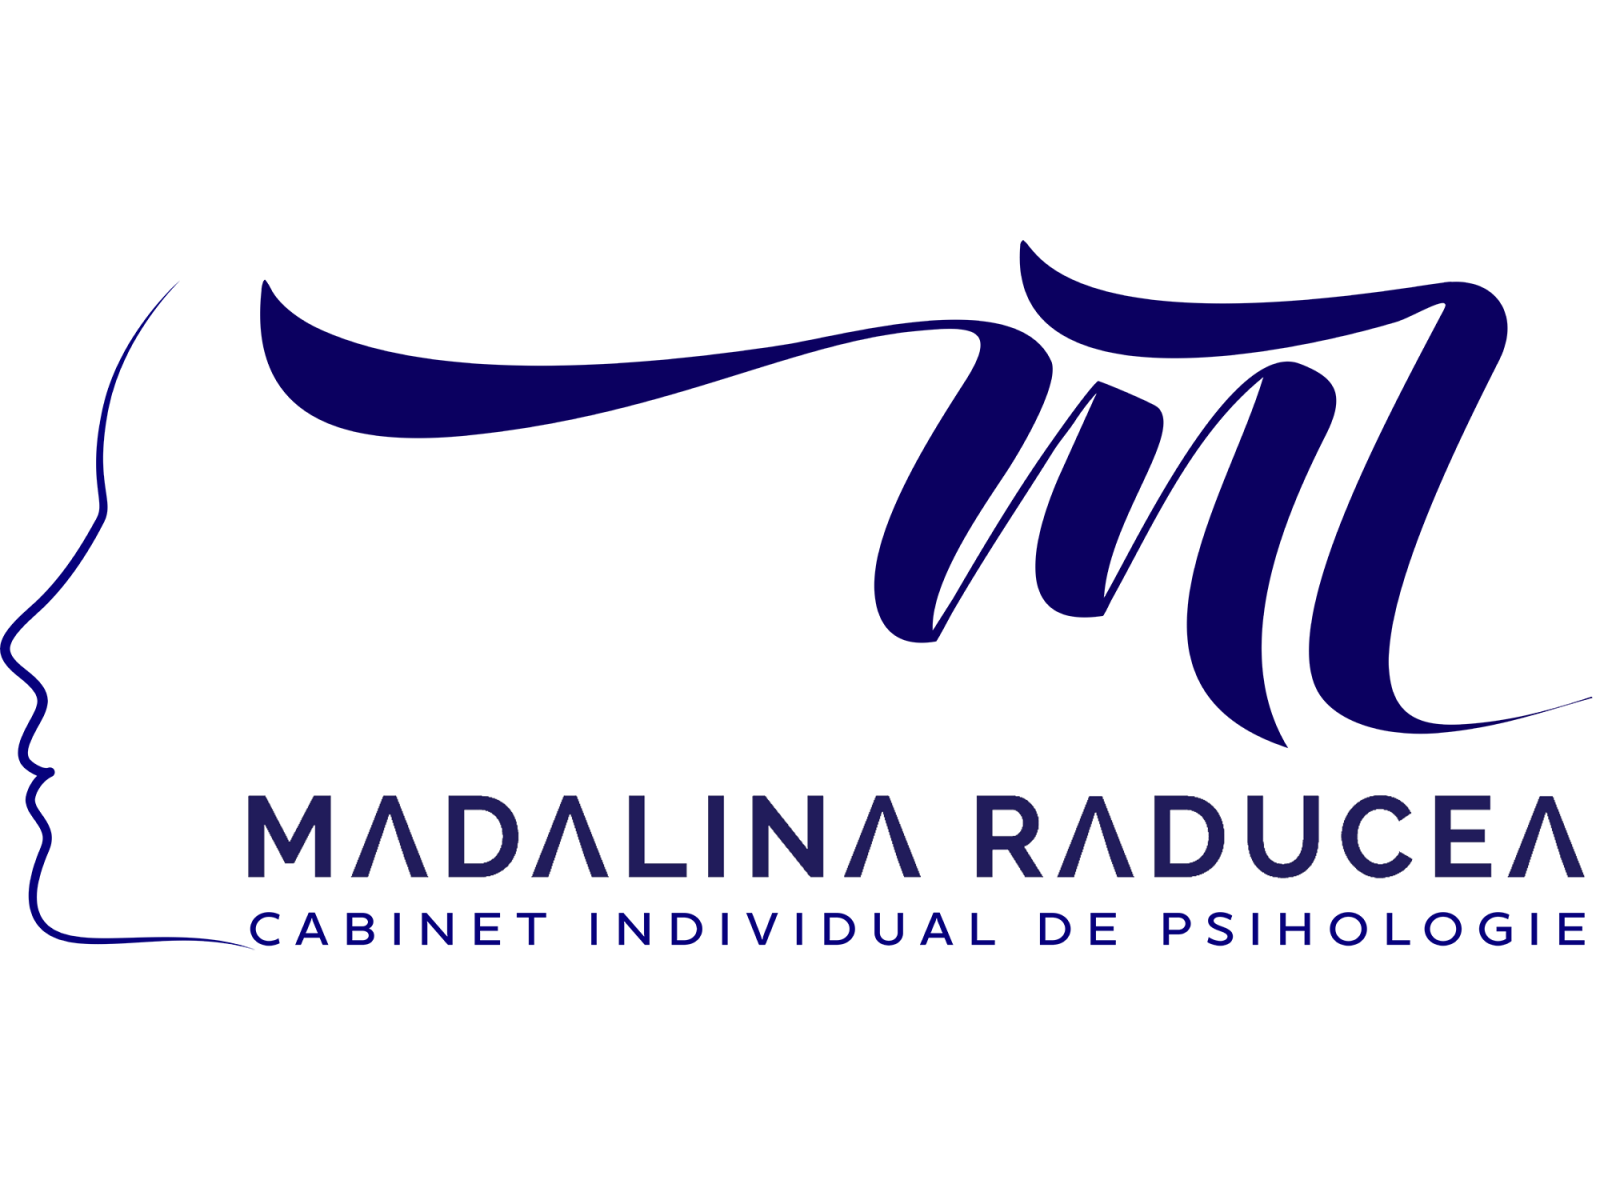 Cabinet Individual de Psihologie Mădălina Cretu Raducea - logo-final111_copy.png